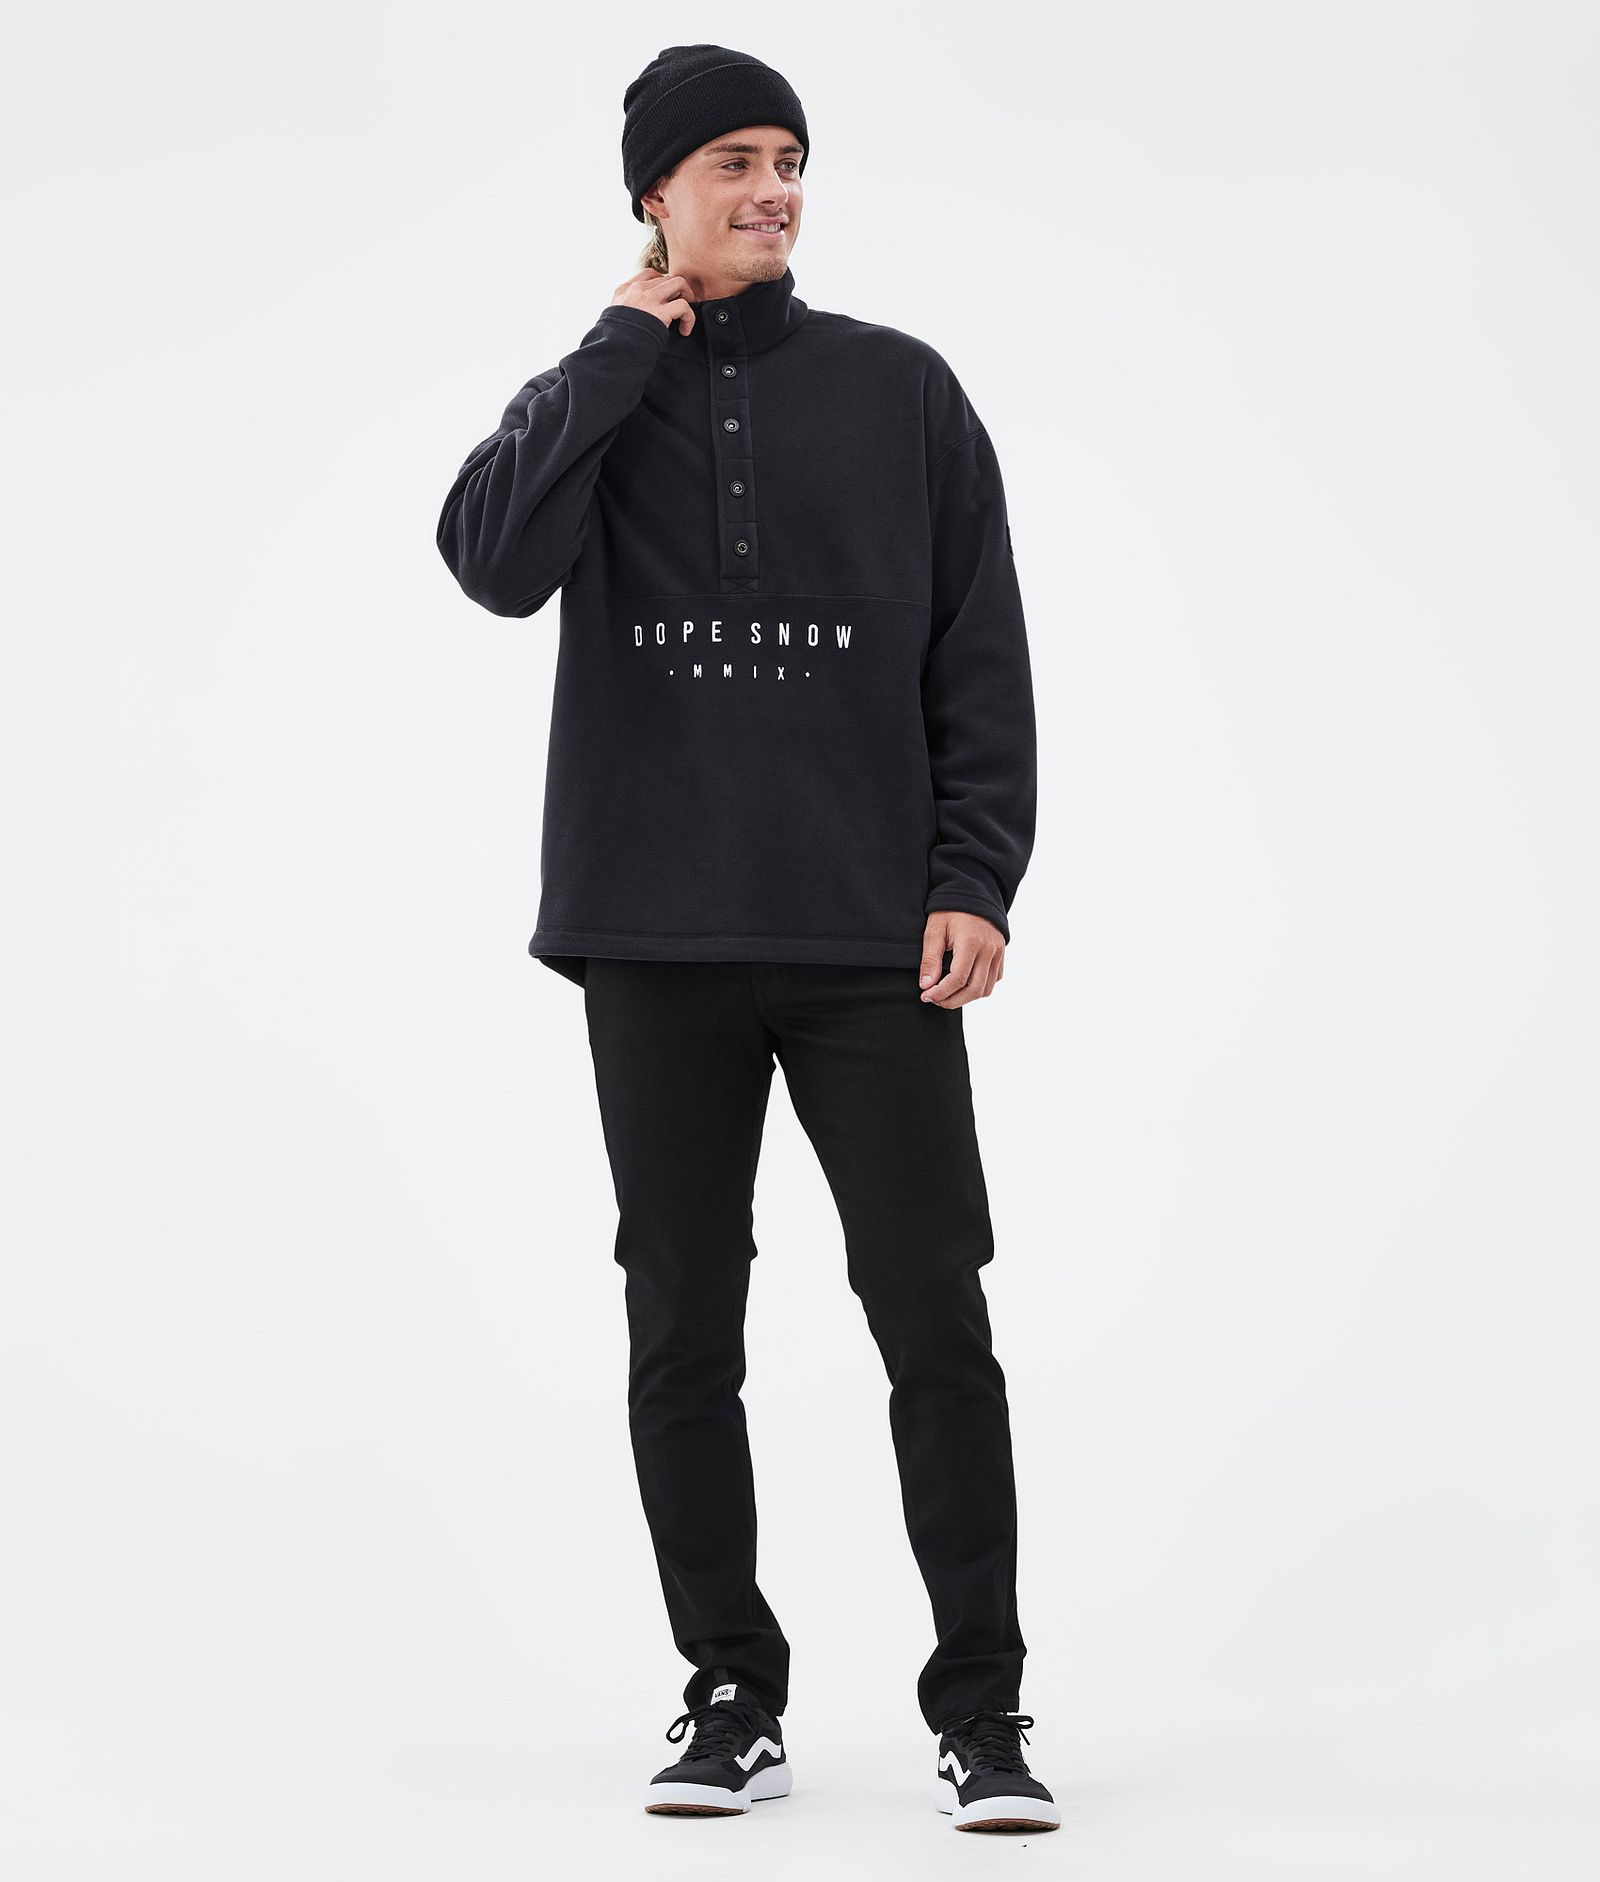 Dope Comfy Fleece Sweater Men Black